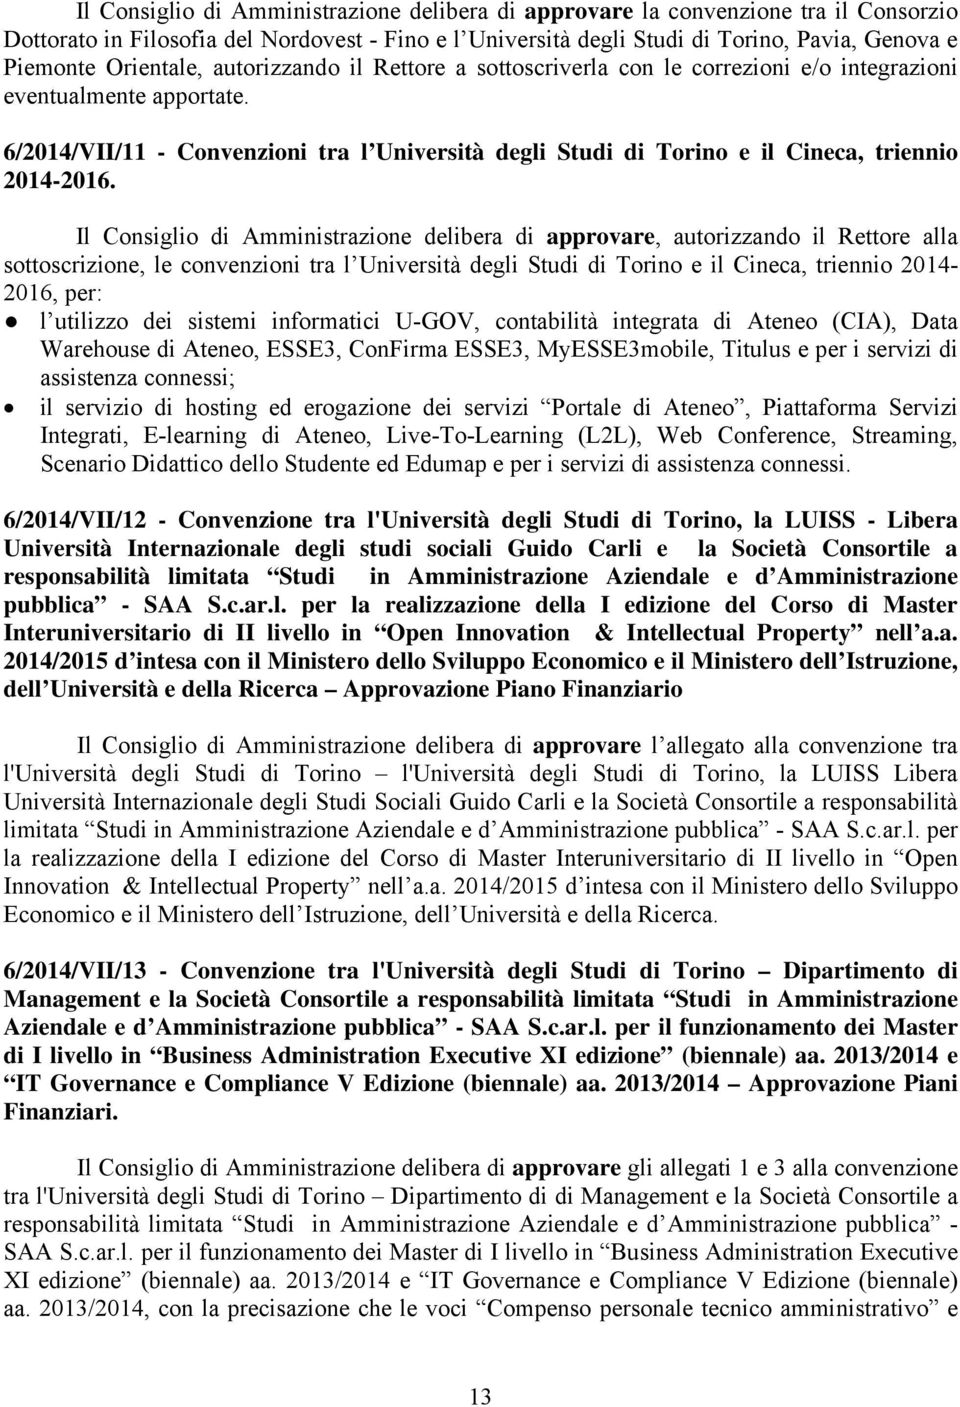 6/2014/VII/11 - Convenzioni tra l Università degli Studi di Torino e il Cineca, triennio 2014-2016.